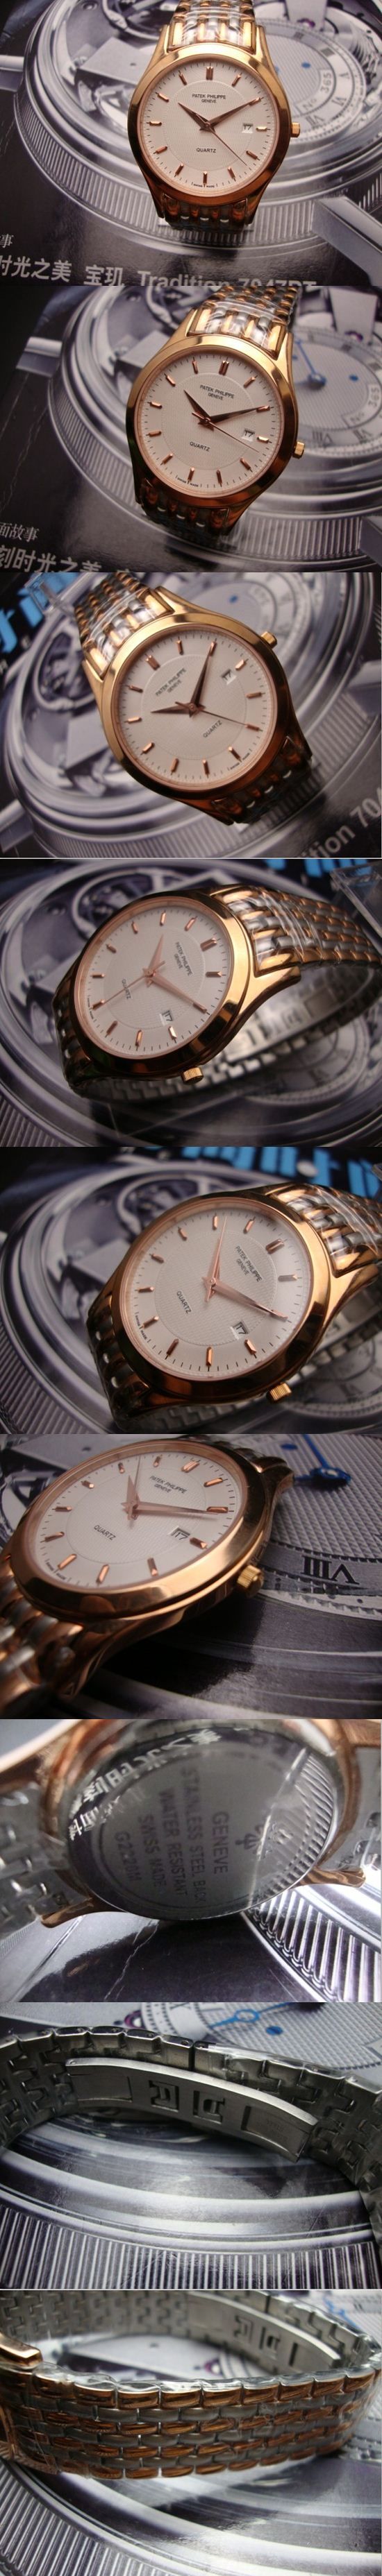 おしゃれなブランド時計がPATEK PHILIPPE-パテック フィリップ腕時計 パテック フィリップ 男/女腕時計 PATEK-PHILIPPE-N-010A を提供します.